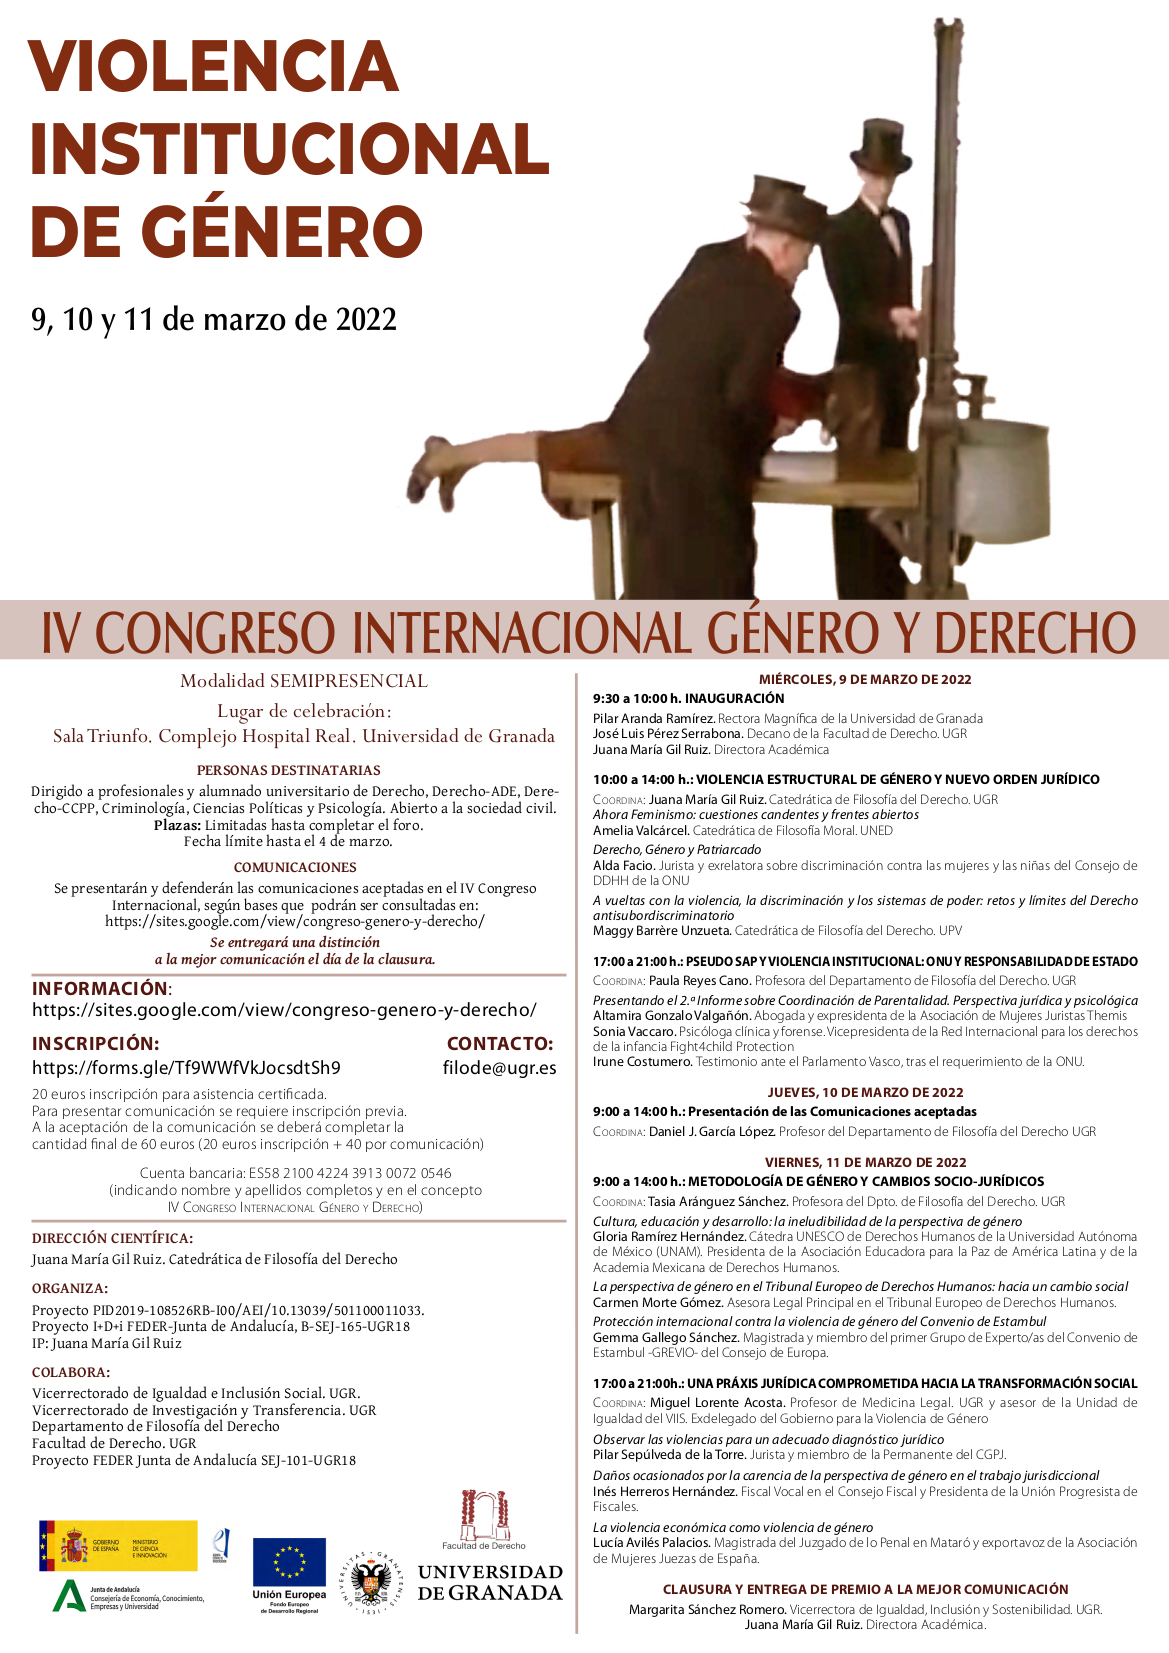 Abierto el plazo de inscripción para el IV Congreso Internacional Género y Derecho: Violencia Institucional de Género